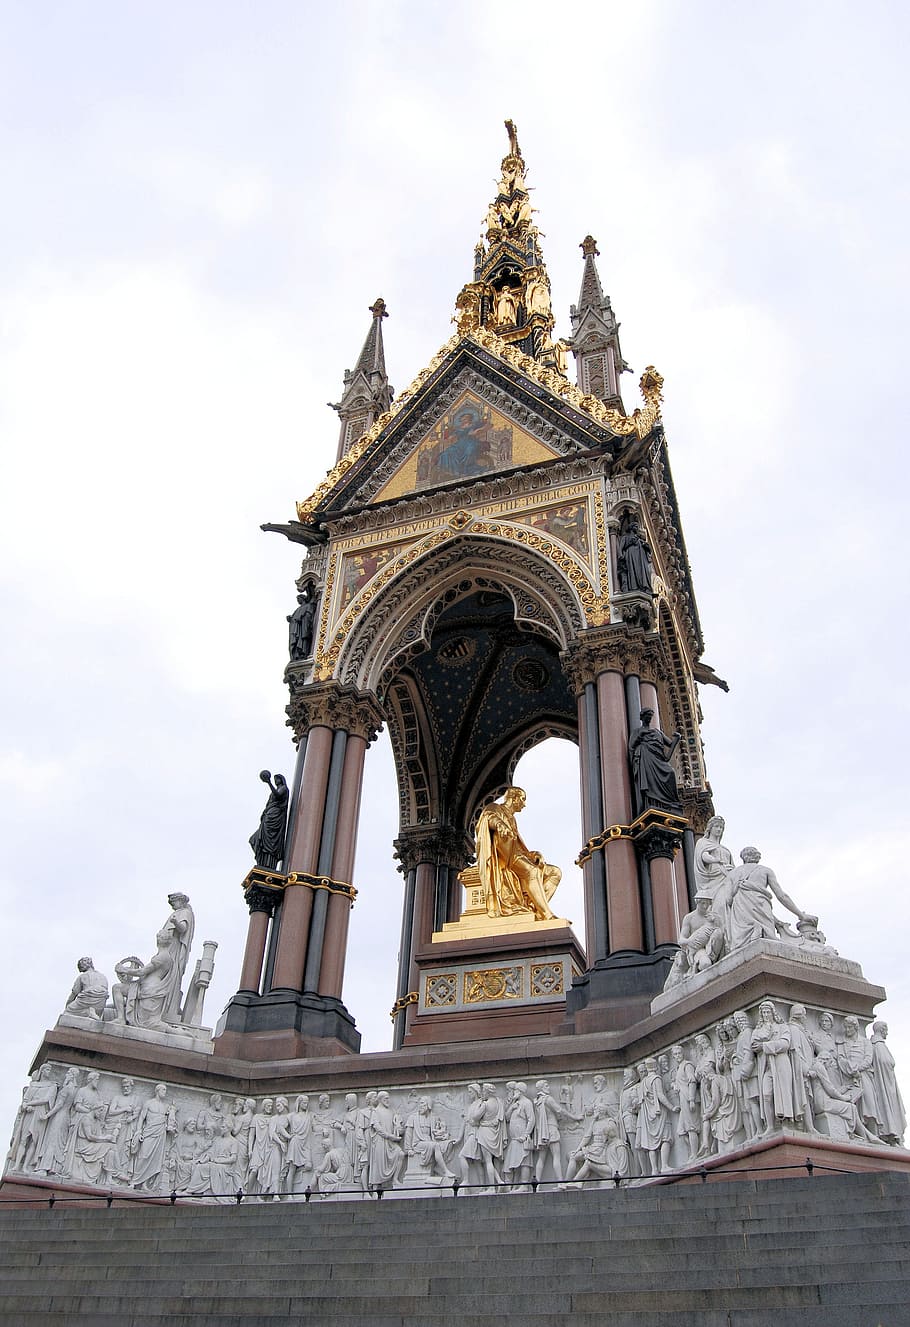 Albert Memorial, Kensington Gardens, parnassus frieze, london, patung, monumen, kreatif, karya seni, desain, karya logam